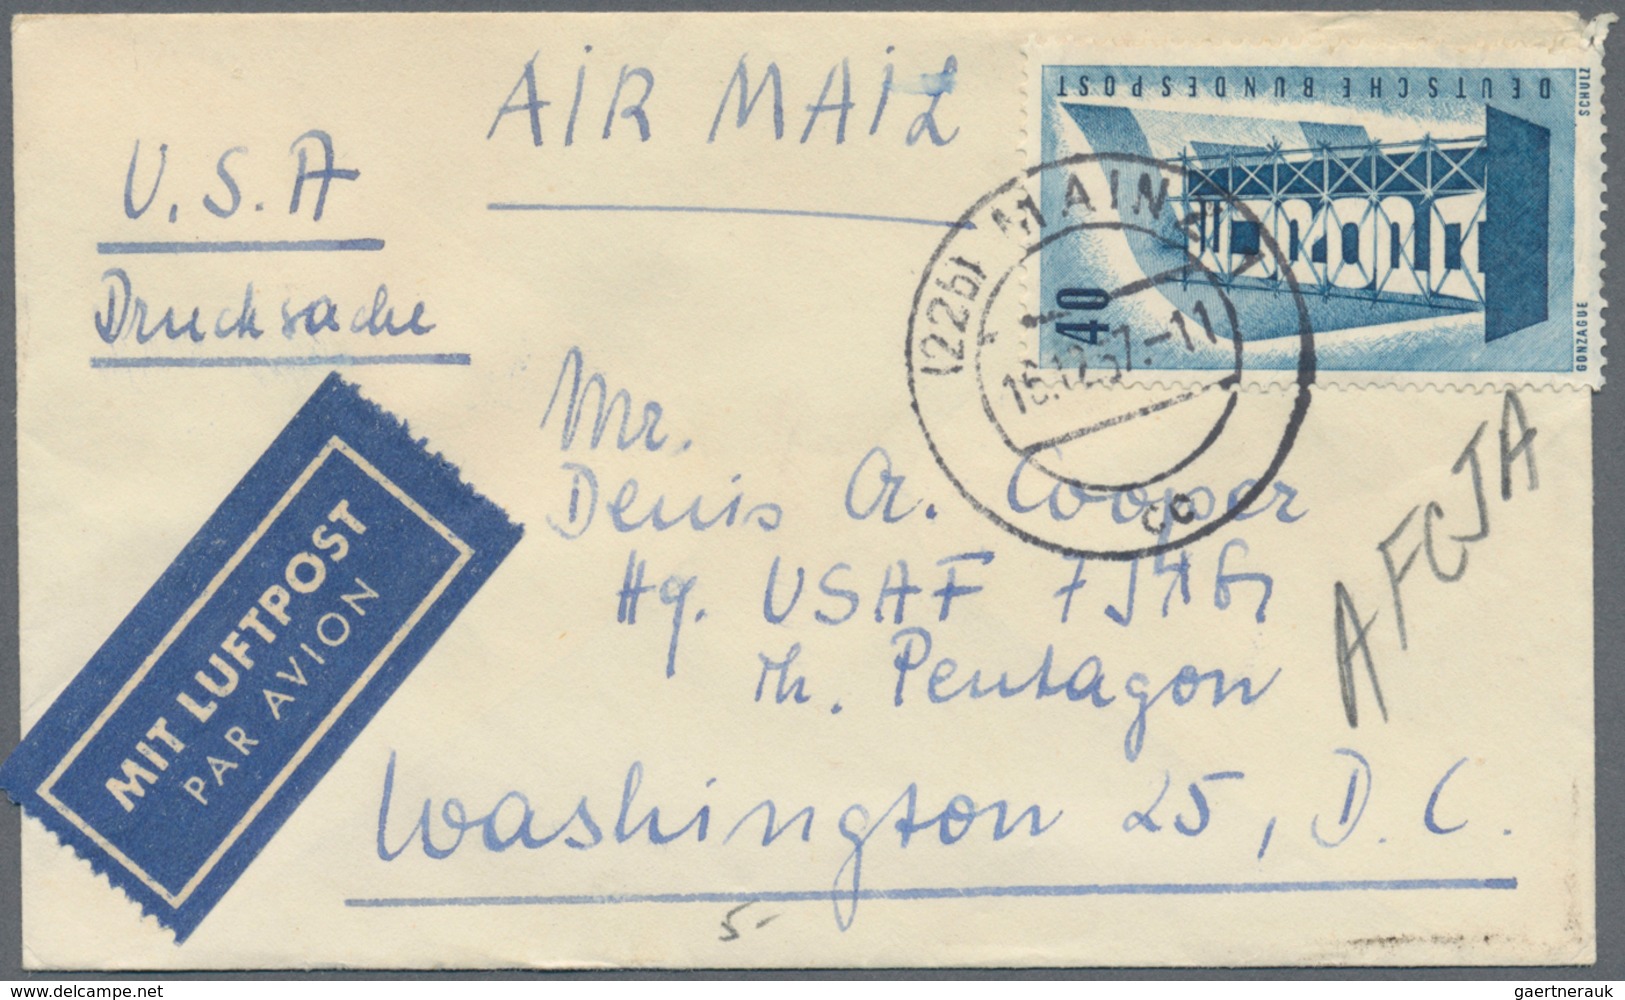 Bundesrepublik Deutschland: 1956/1997, Post nach Übersee, vielseitige Partie von ca. 68 Briefen und